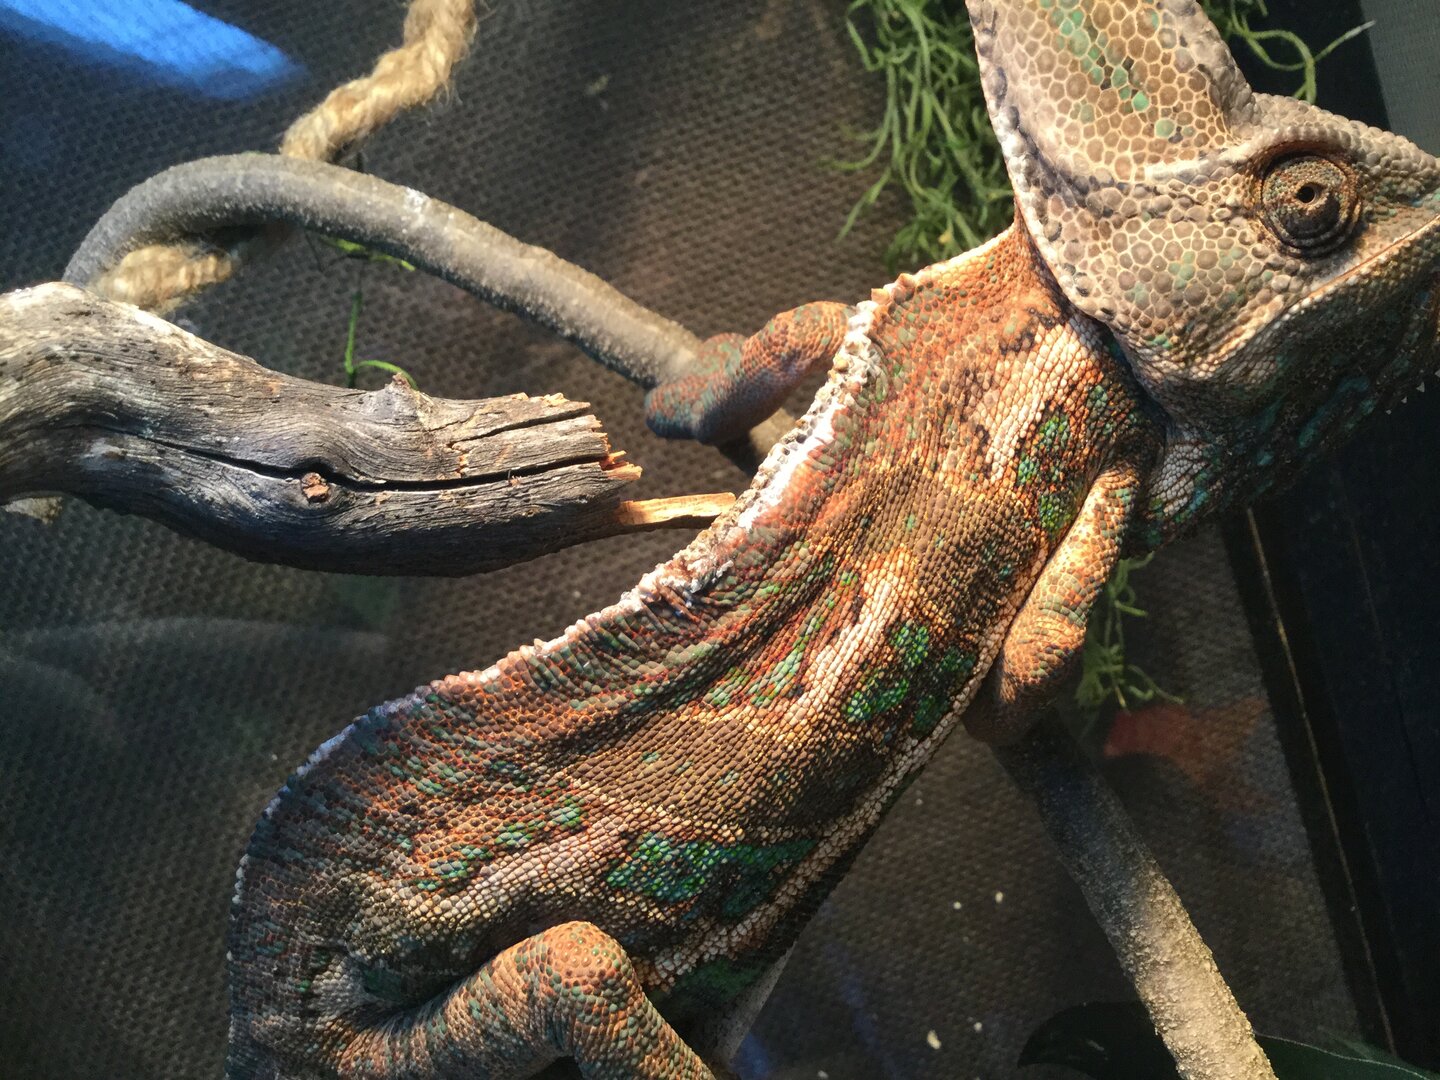 Veiled chameleon spine issues | Chameleon Forums